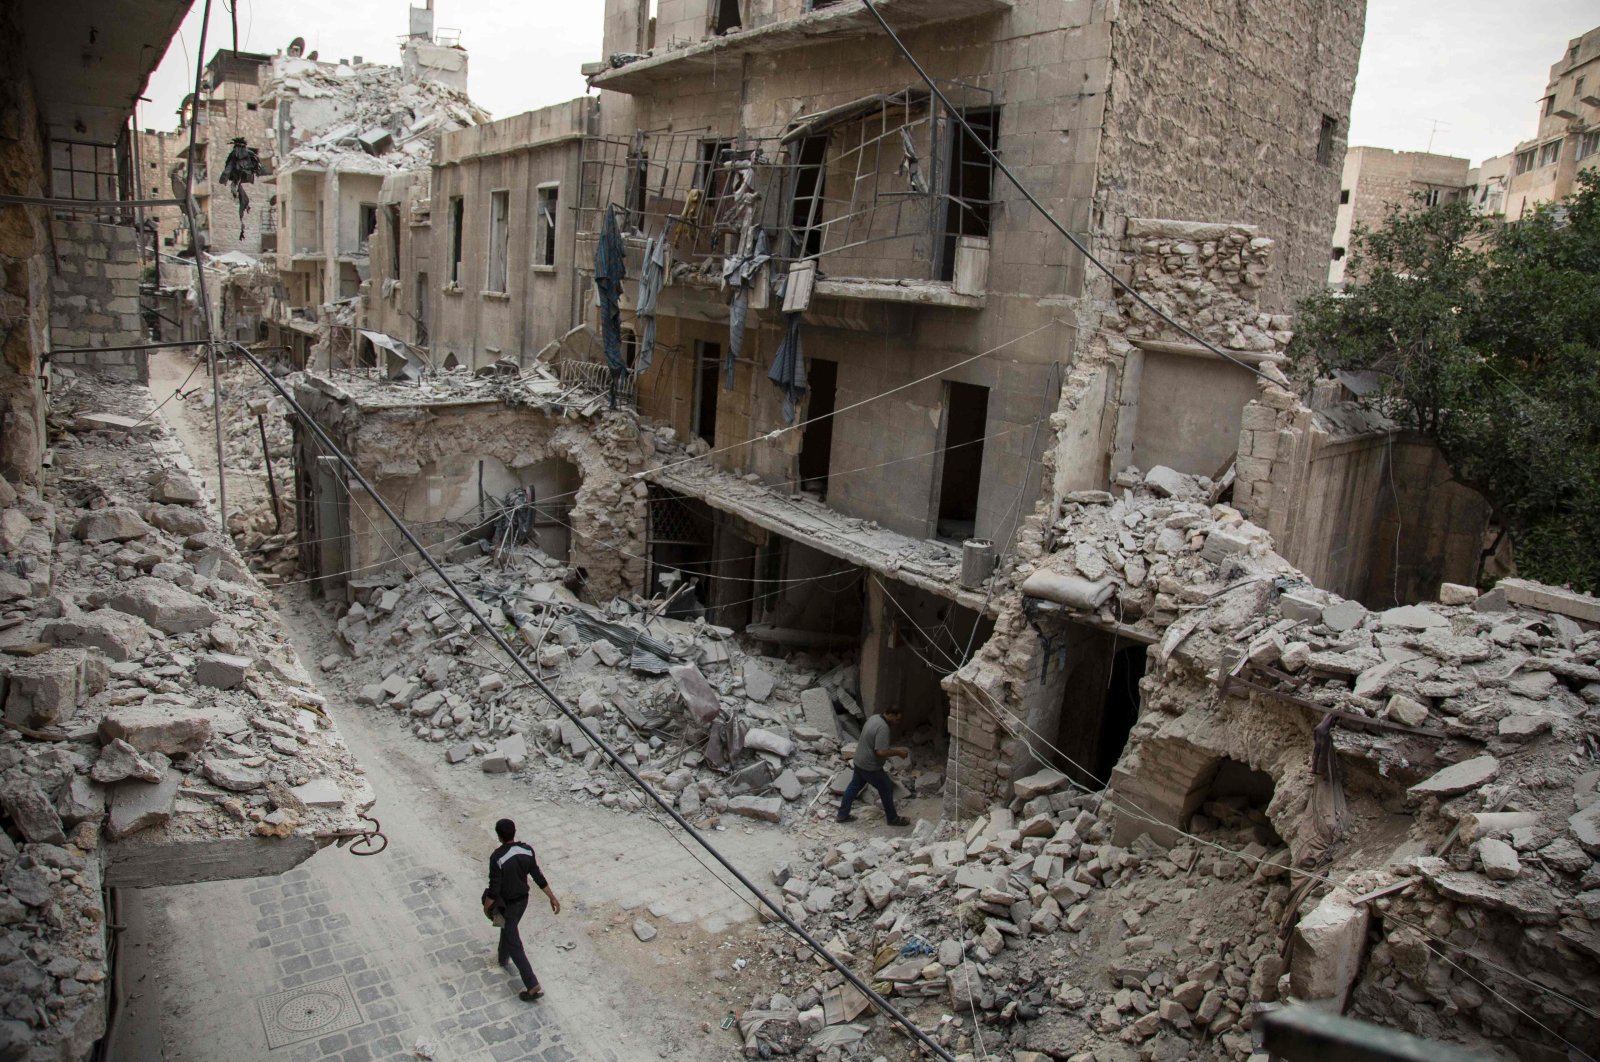 Serangan udara AS menewaskan ribuan warga sipil di Timur Tengah: Pentagon